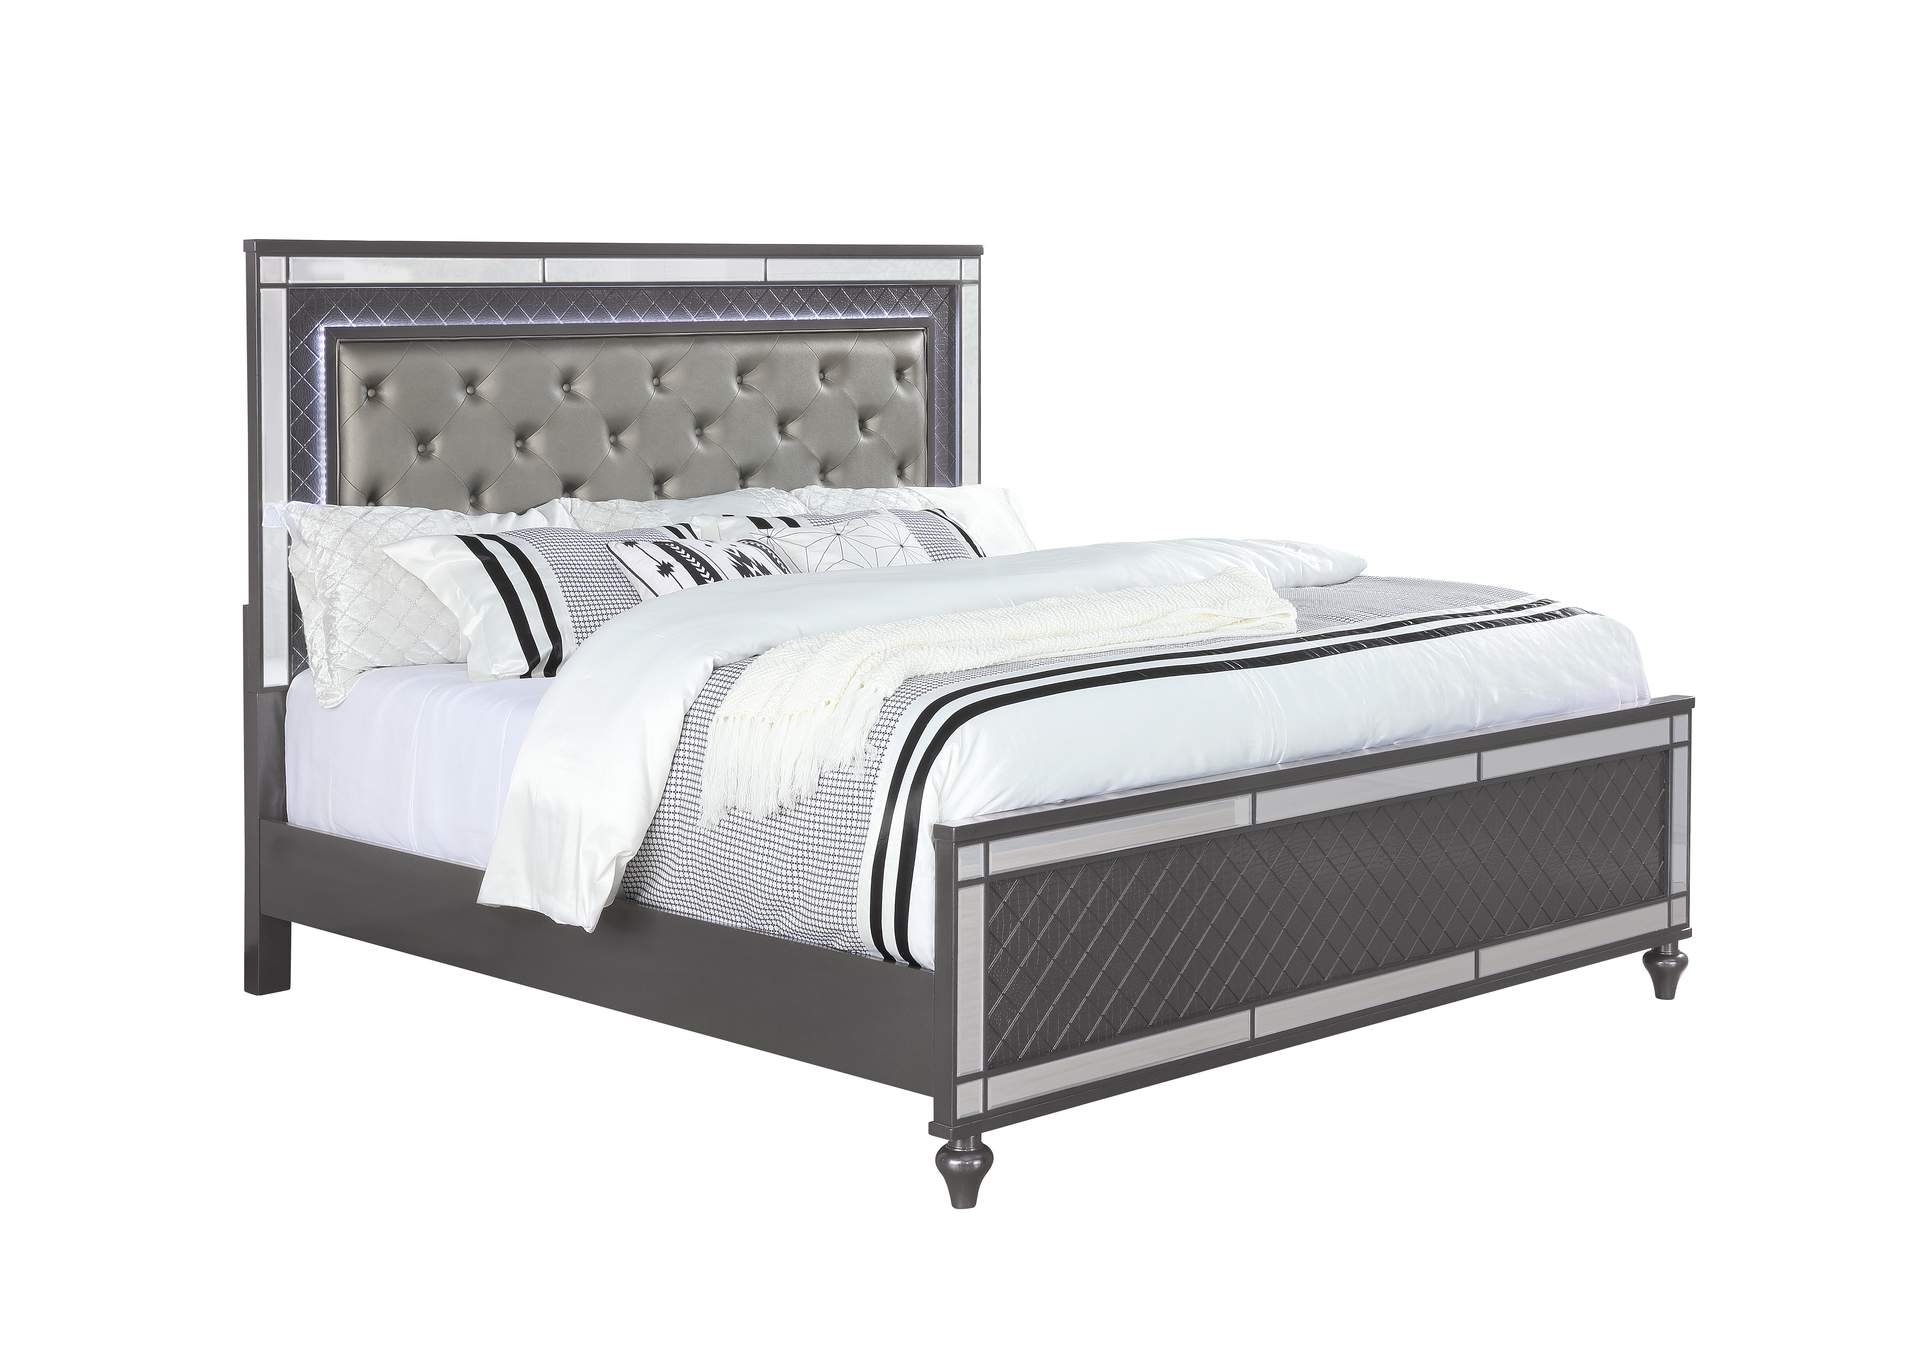 Refino Stainless Steel/Black Queen Bed W/ Dresser & Mirror,Crown Mark